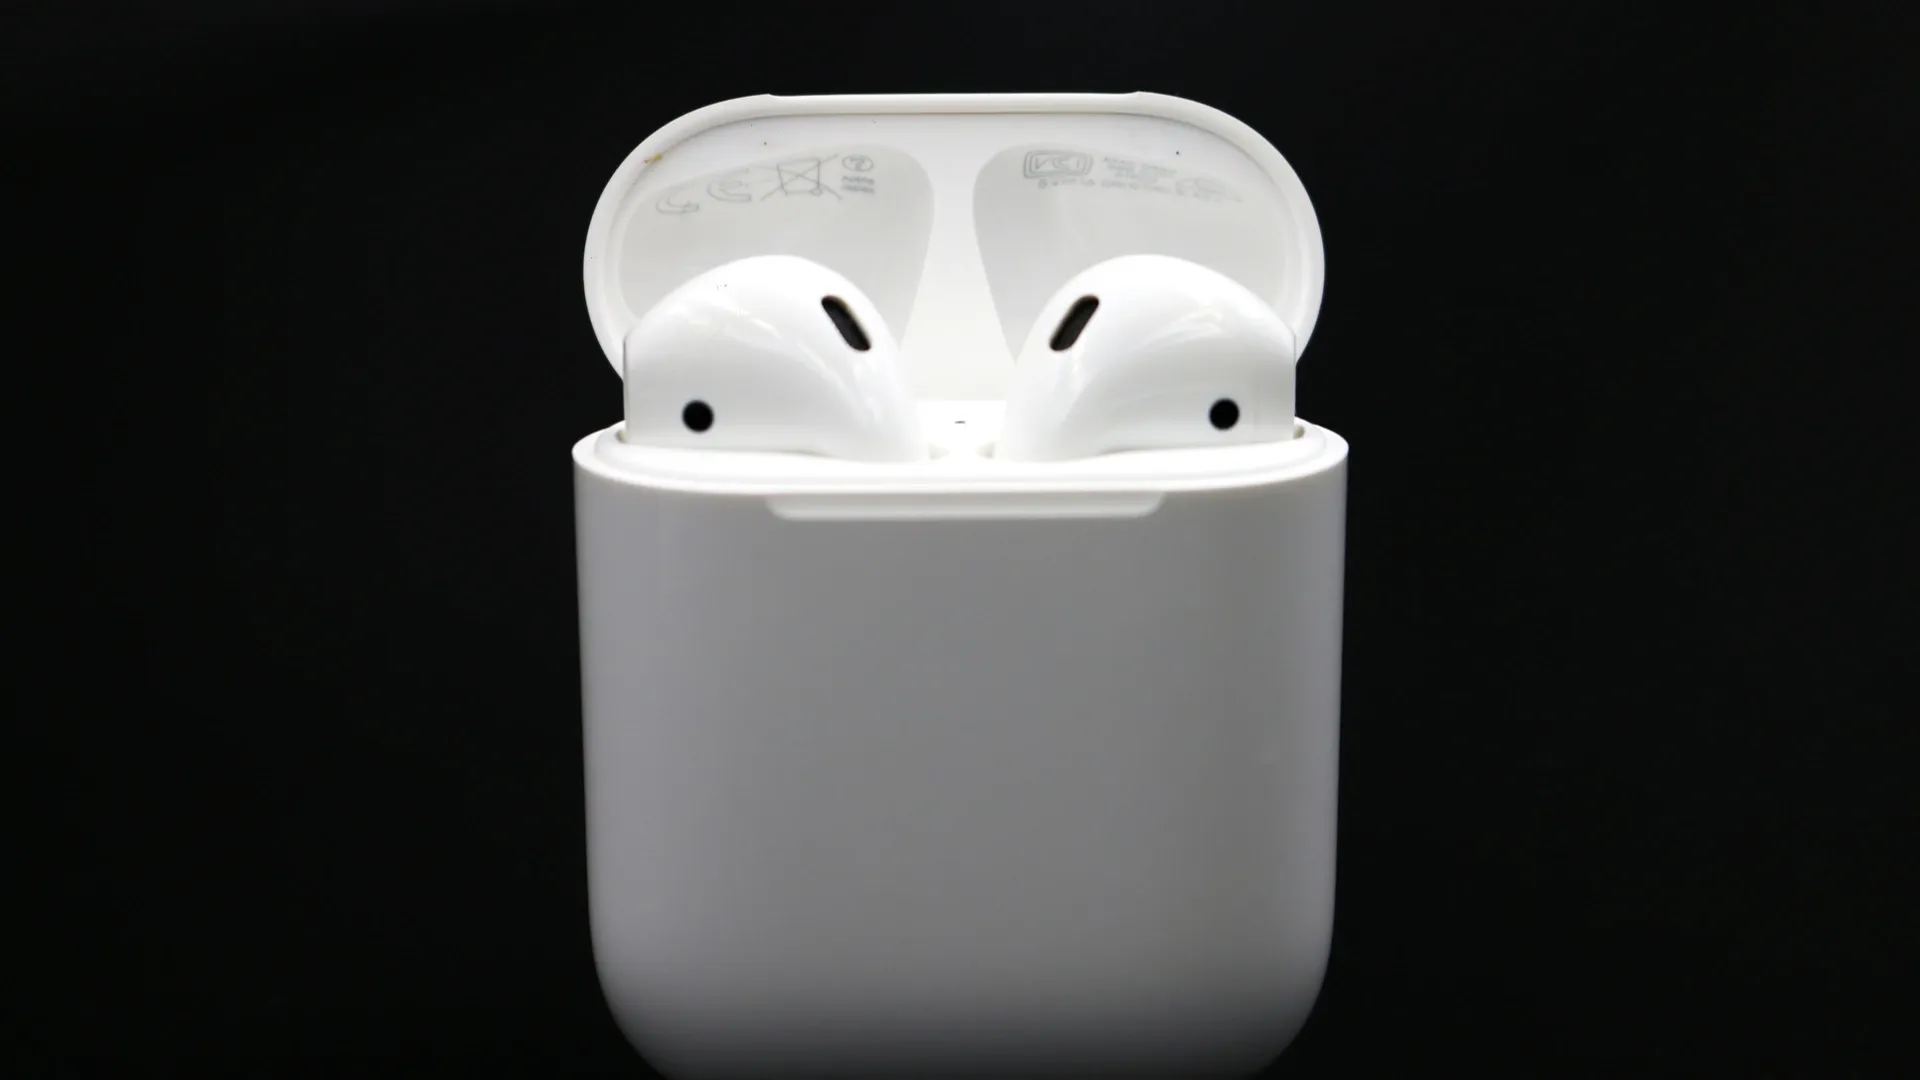 Fone Apple AirPods 2 em seu estojo carregador em fundo preto